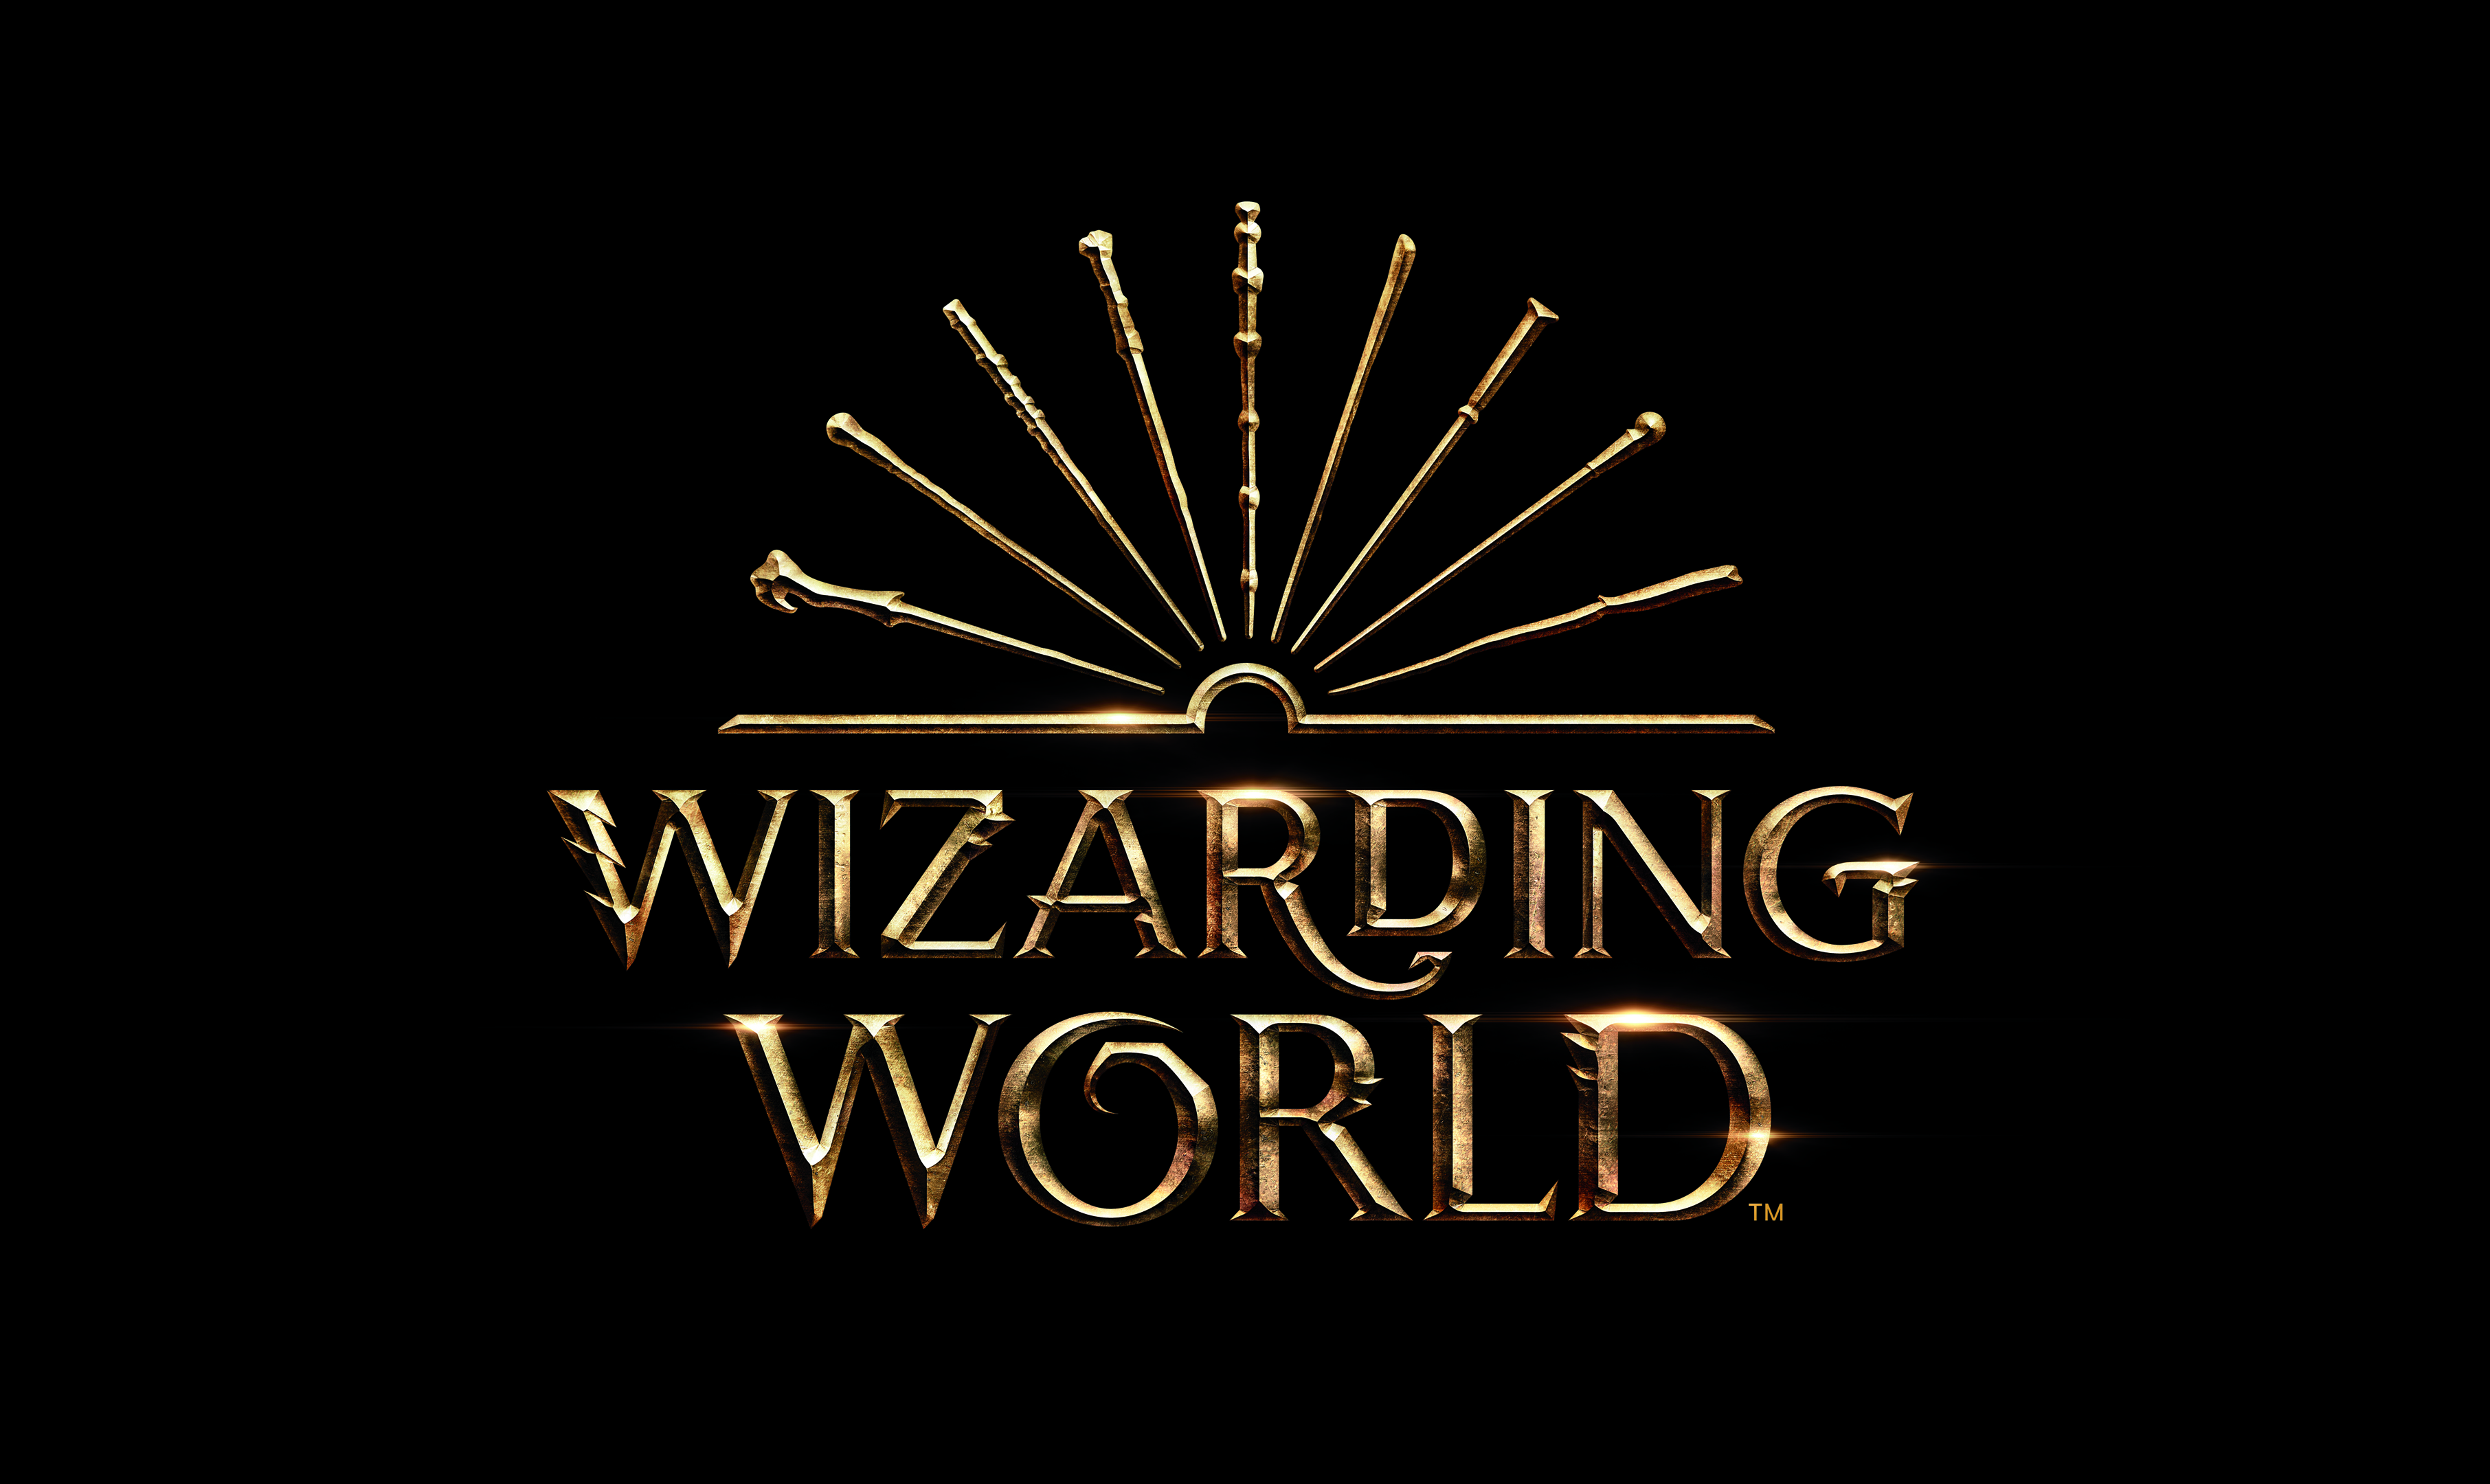 New logo design for Wizarding World